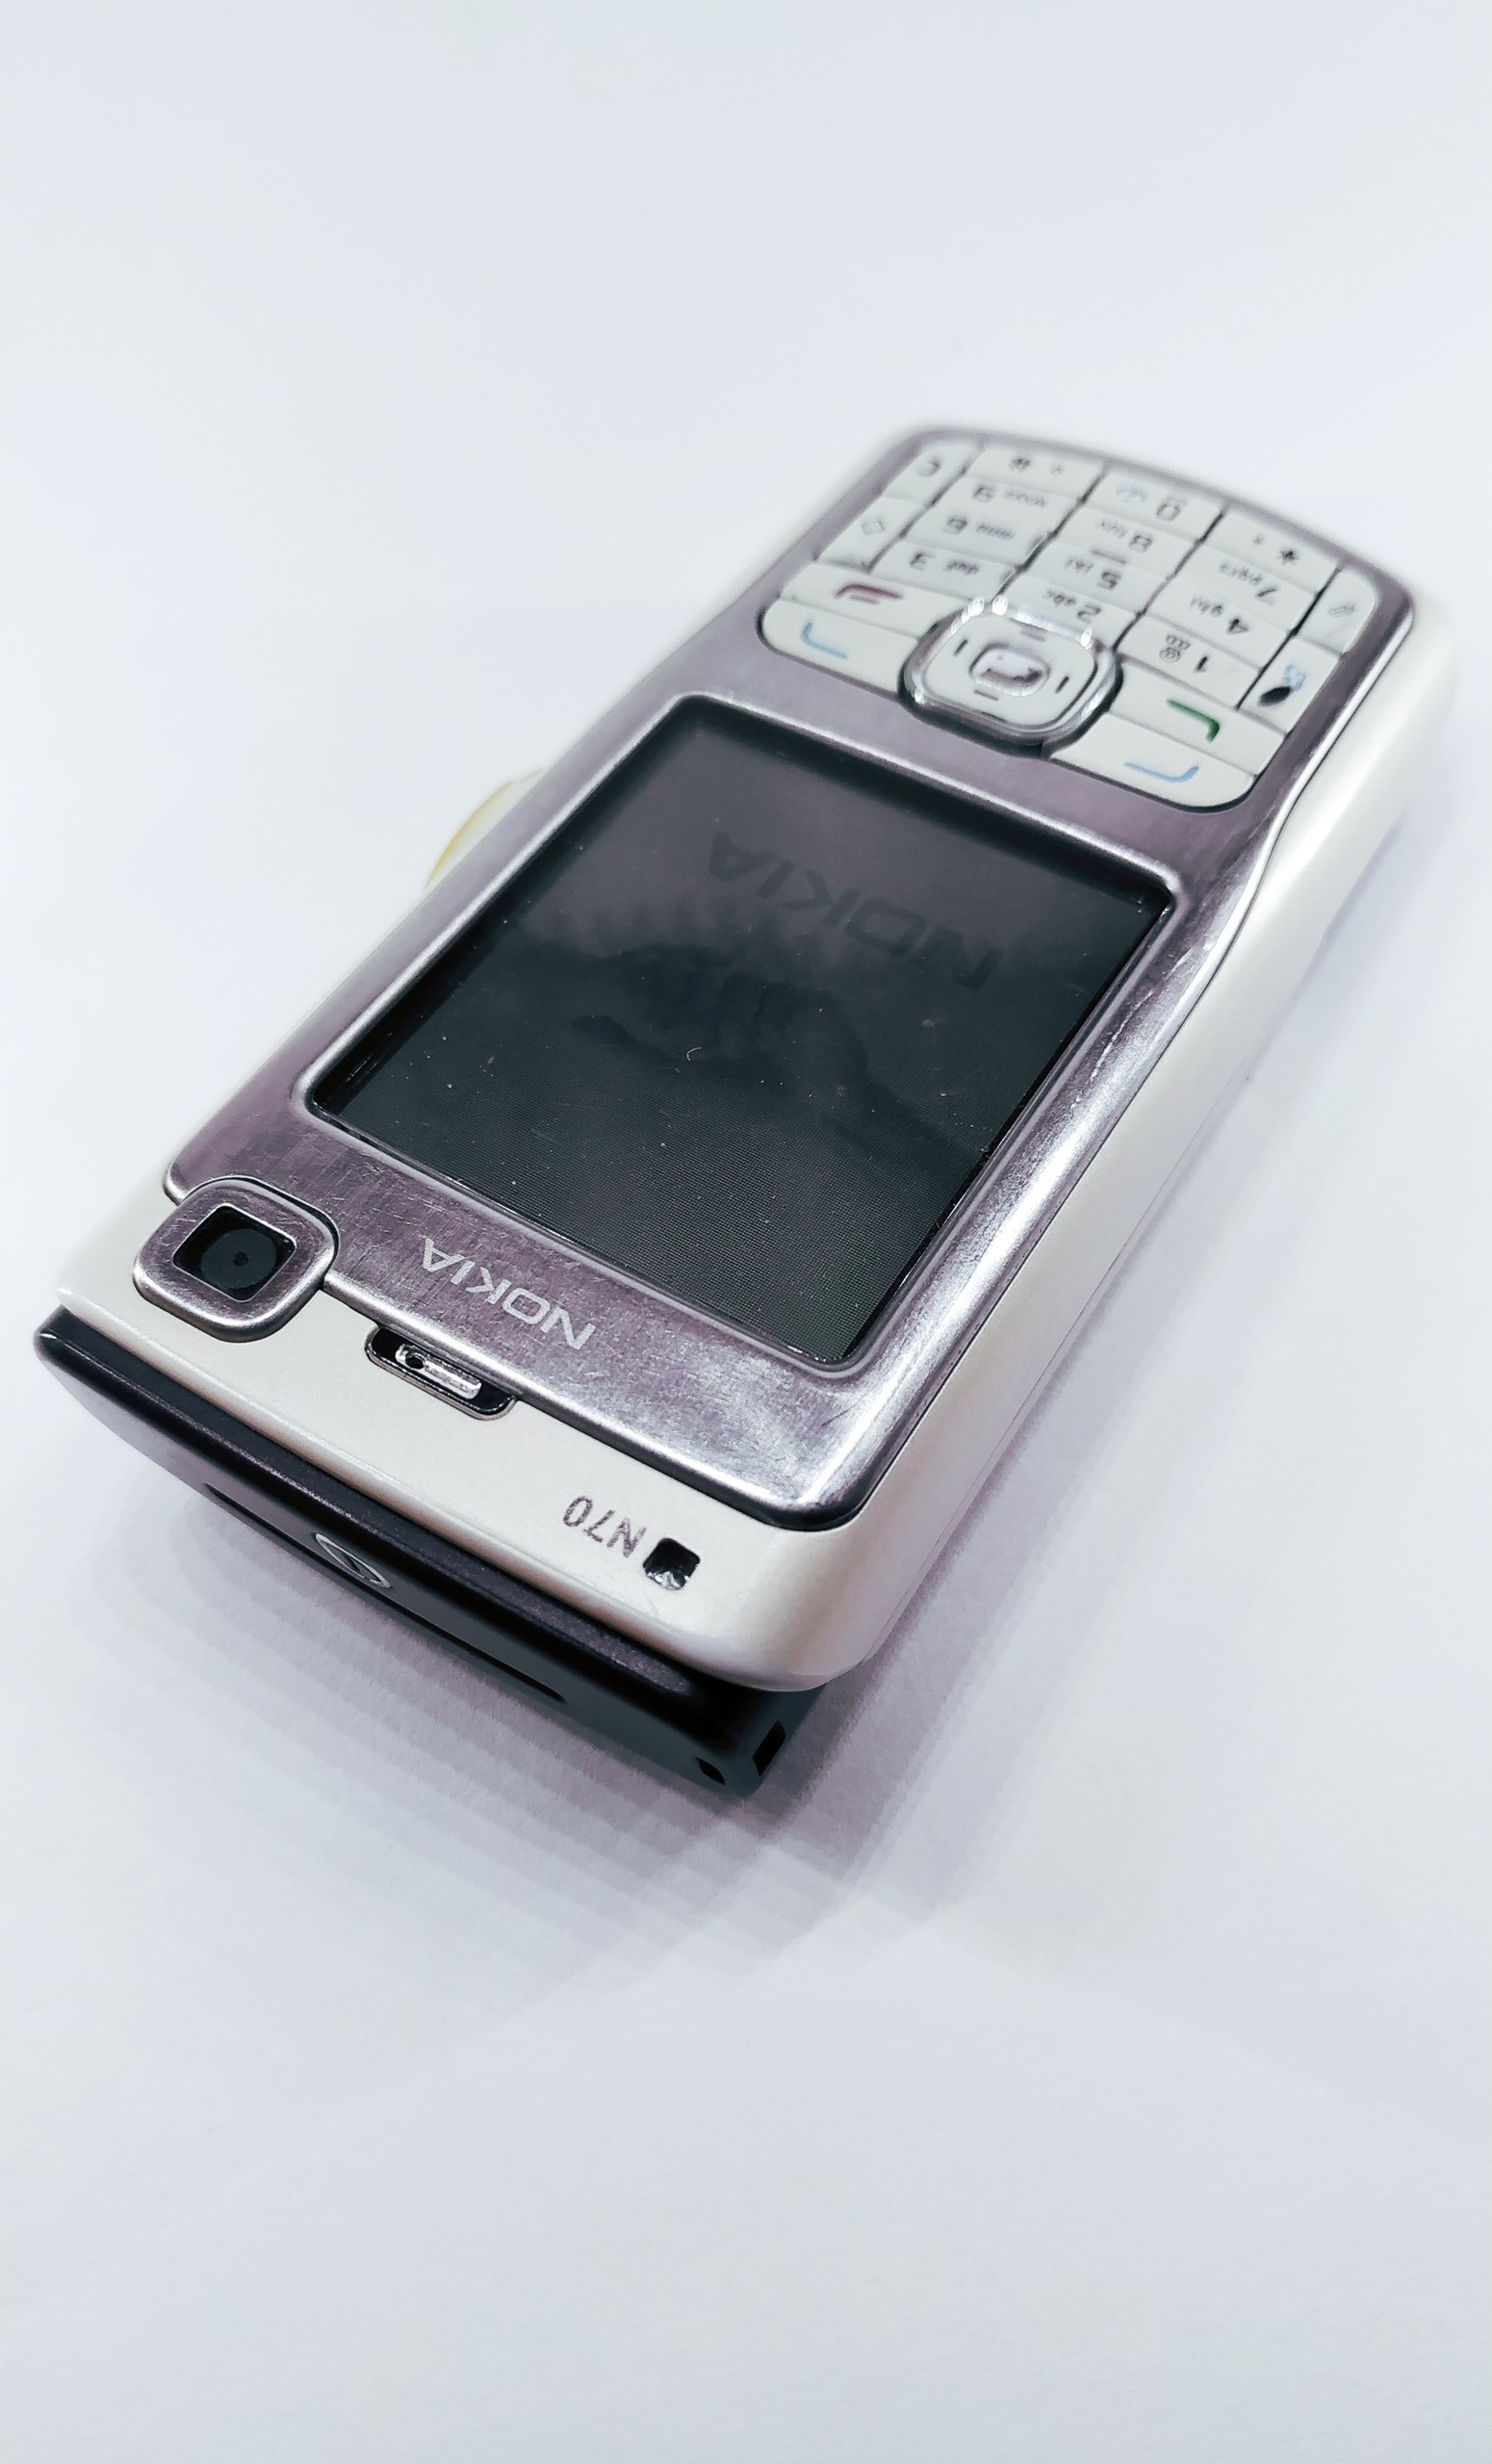 Nokia N70 Sadece Cihaz verilecek